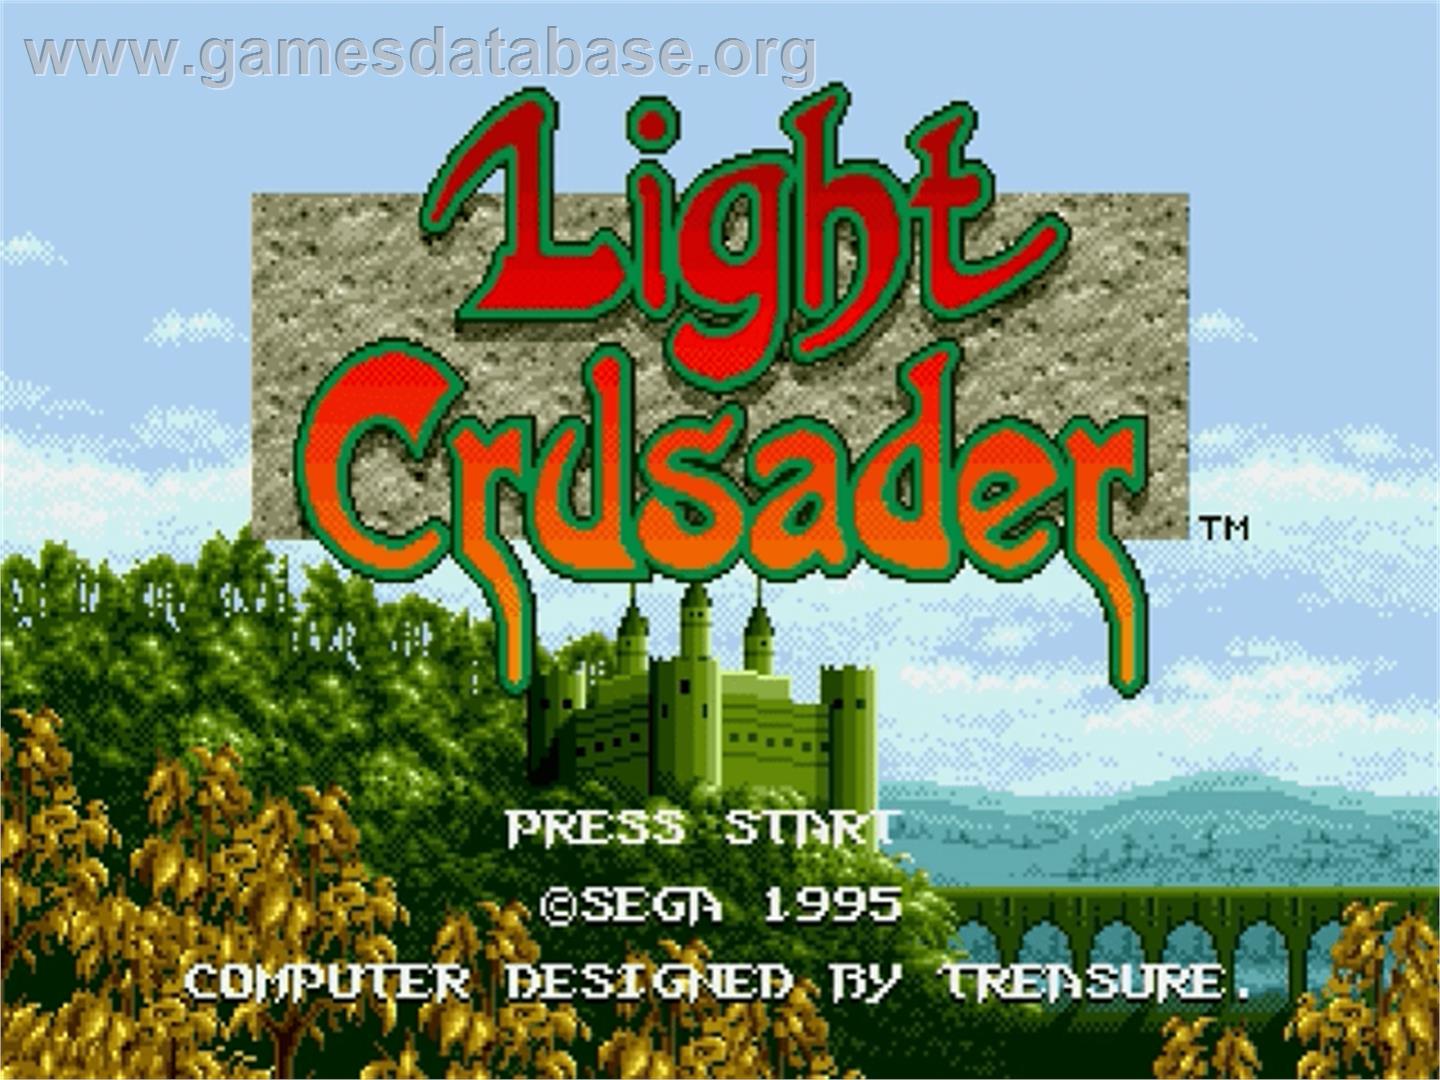 Light Crusader - Sega Genesis - Artwork - Title Screen